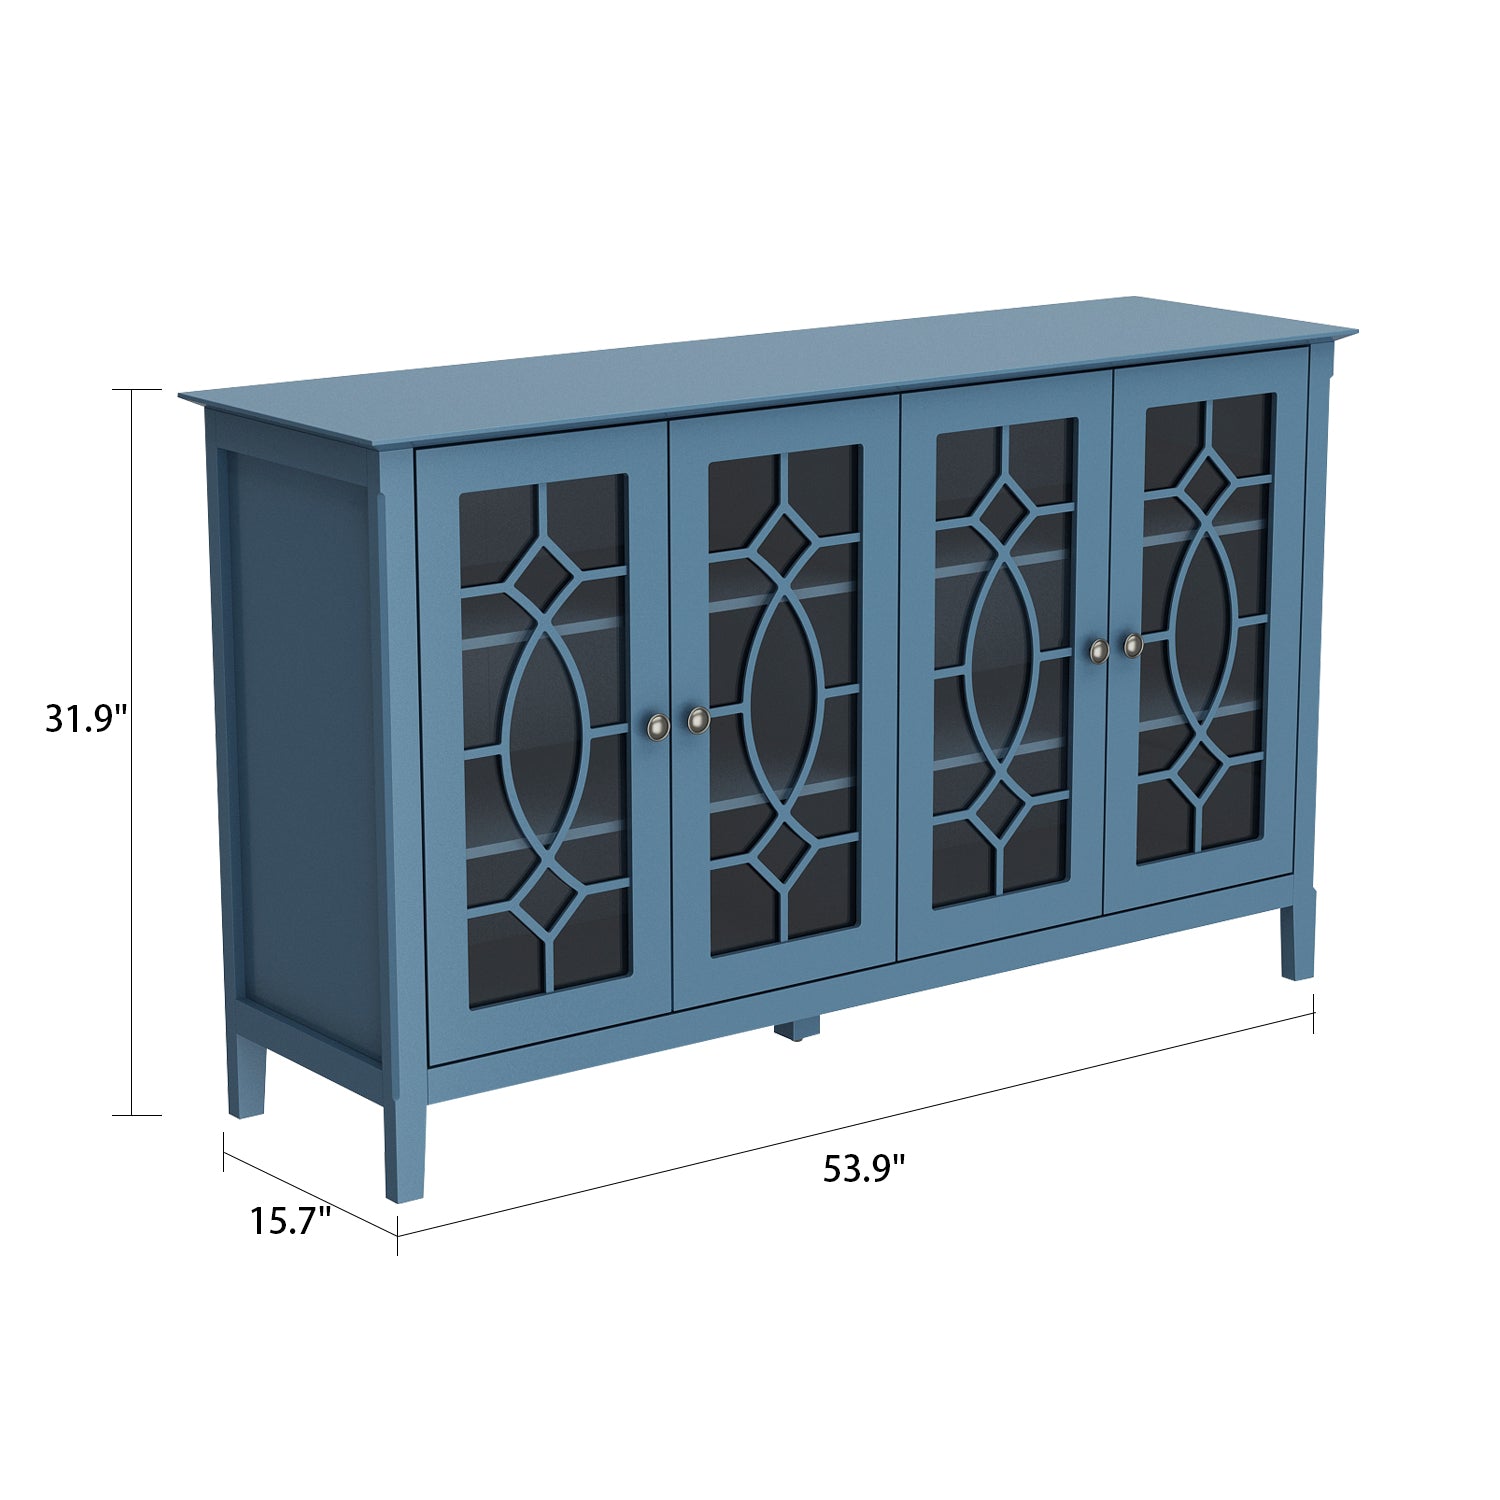 Retro Relief Dining Sideboard 4-Door Display Cabinet for Kitchen Living Room